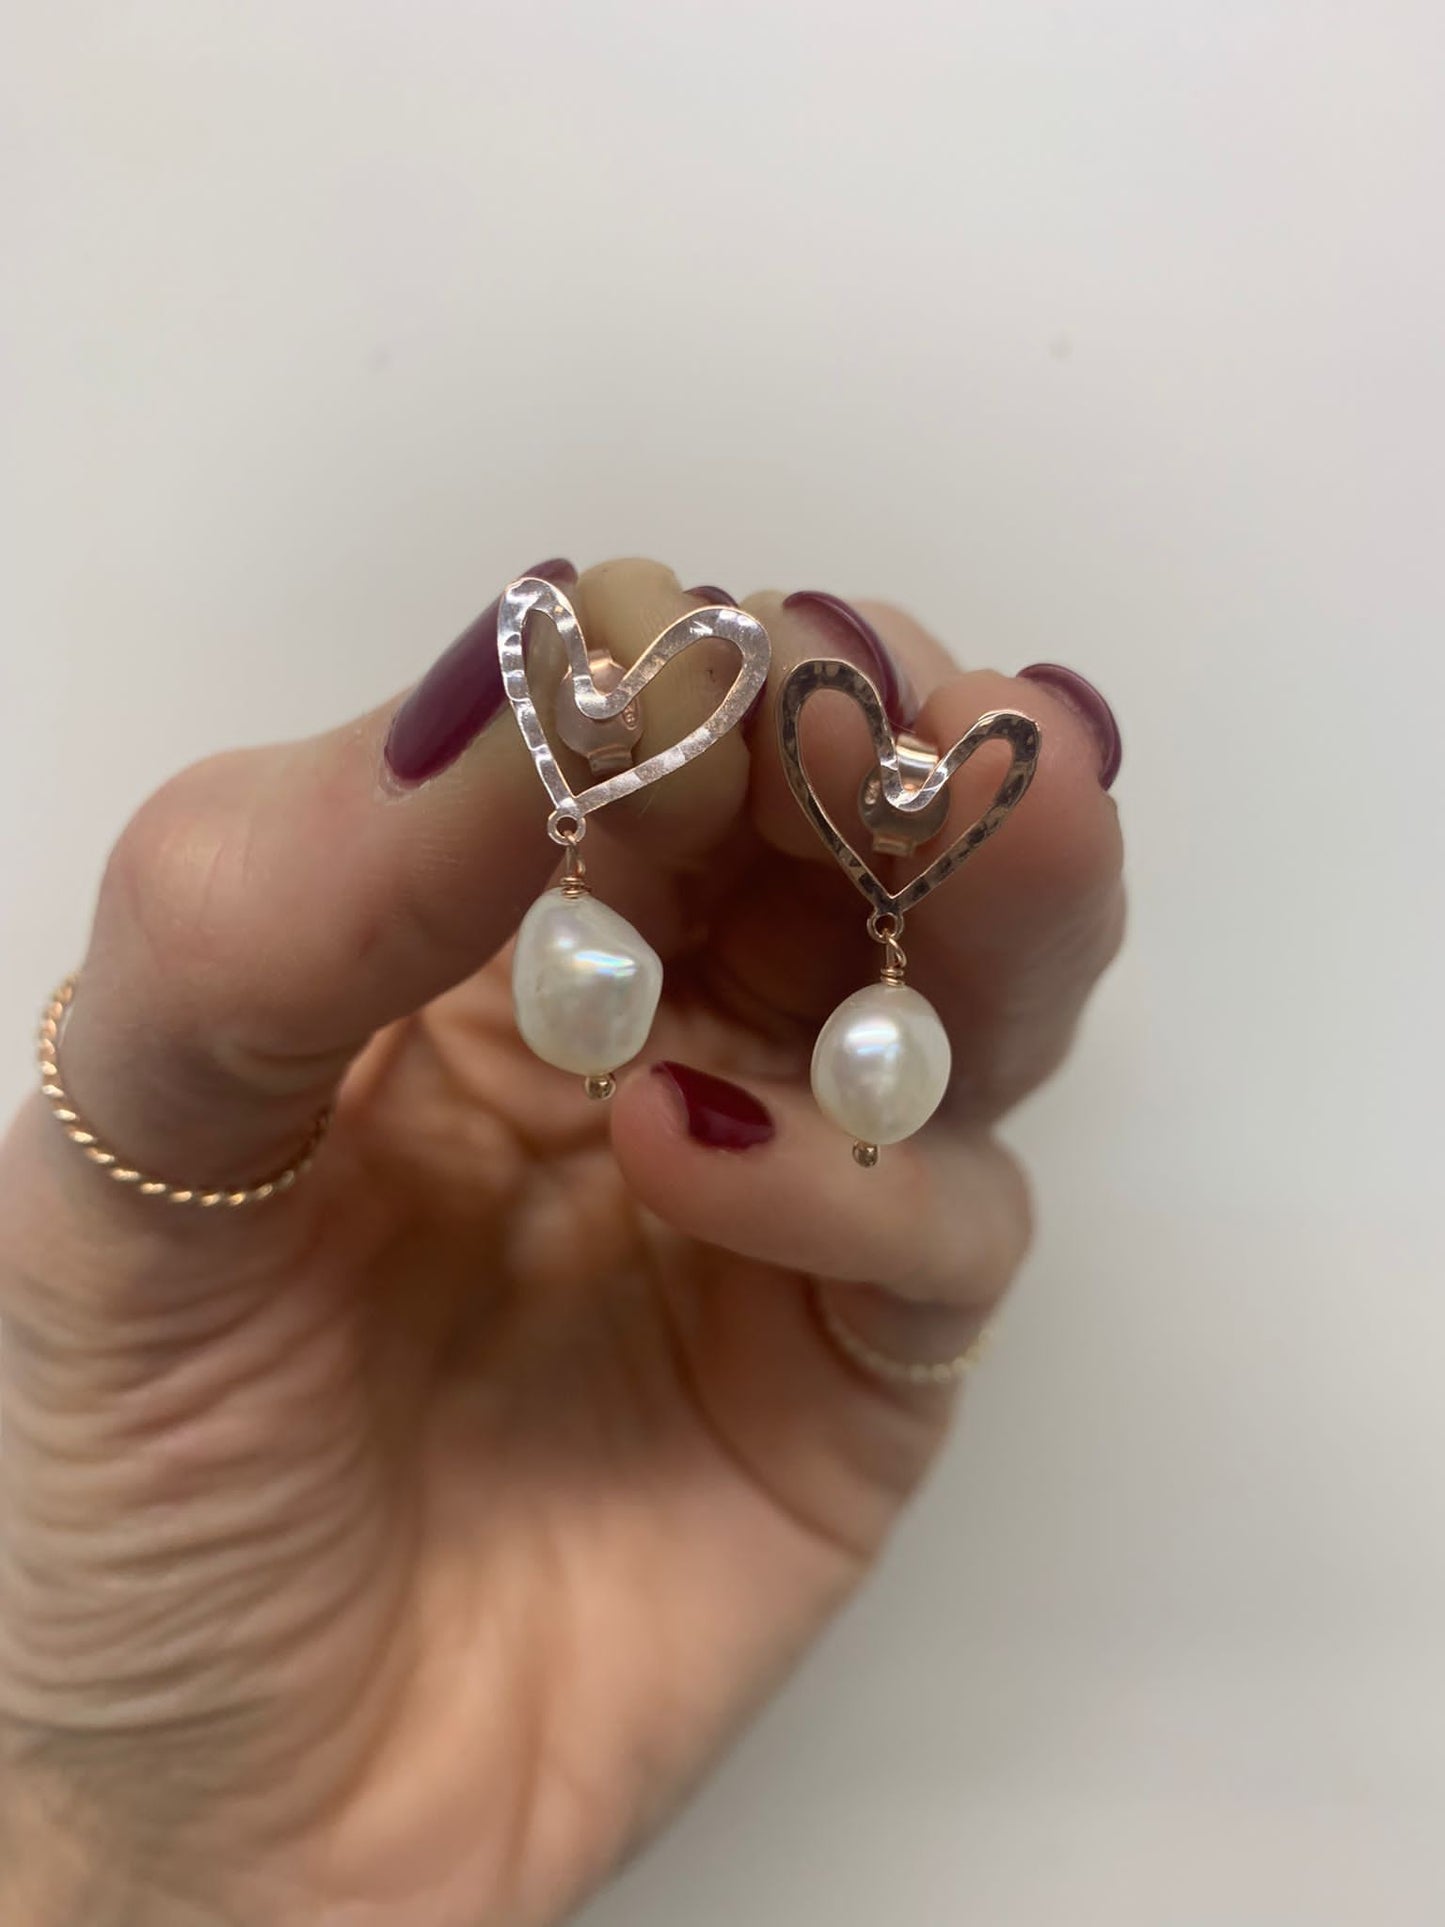 Coppia orecchini a lobo cuore vuoto battuto allungato con perla barocca irregolare - chiusura a farfallina